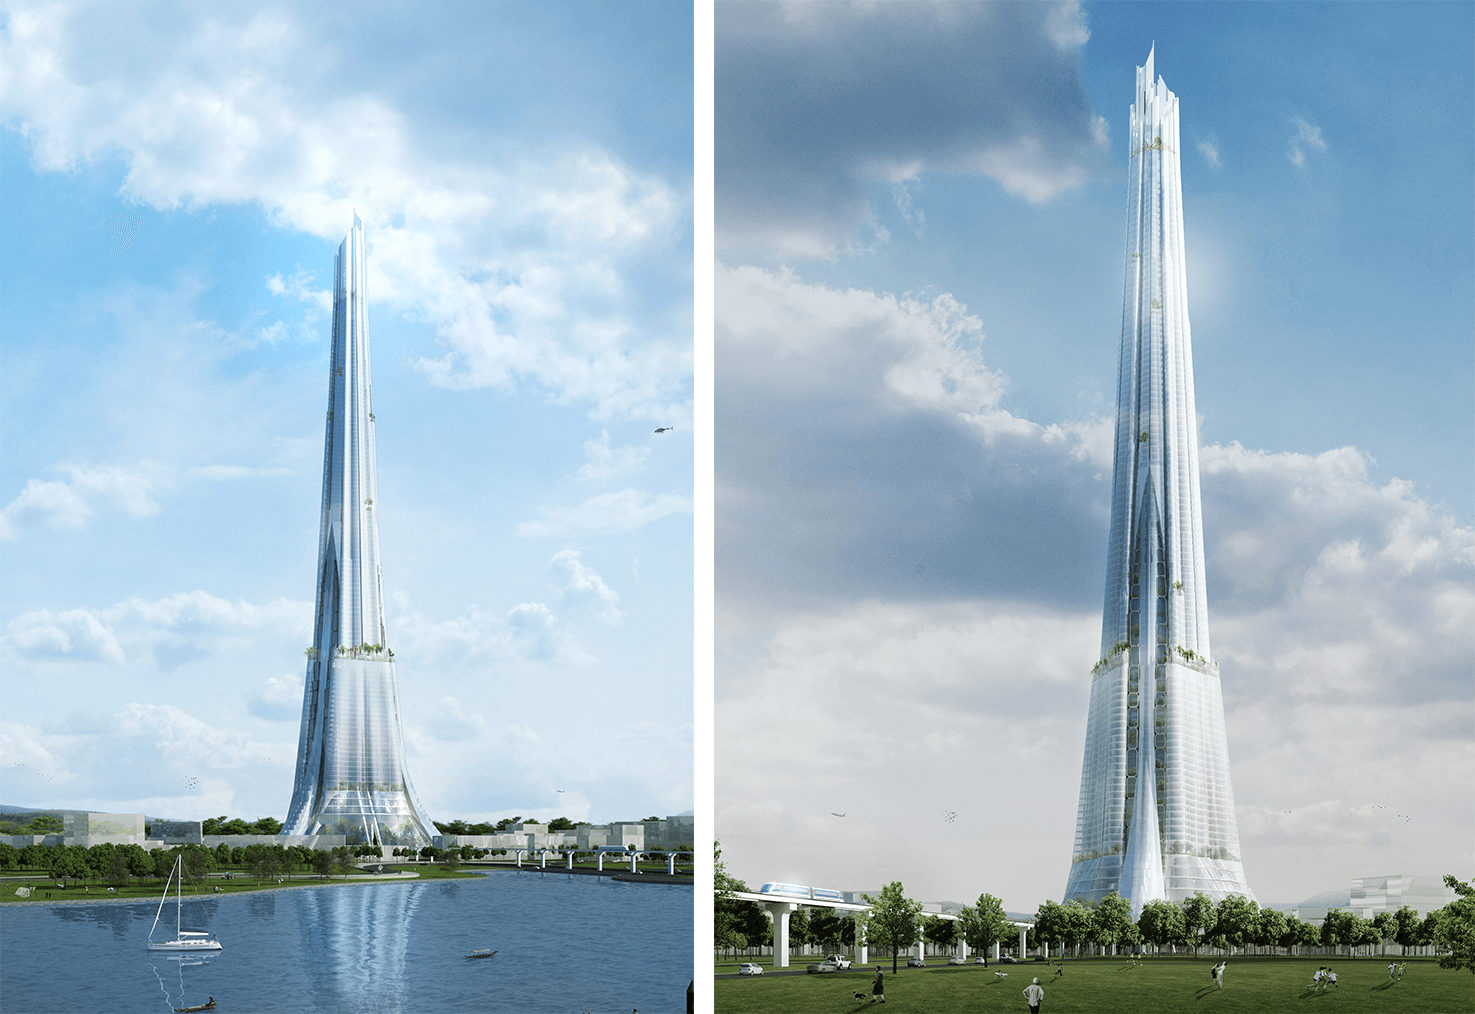 Tháp trung tâm tài chính cao 108 tầng thuộc Dự án xây dựng Thành phố thông minh phía Bắc dự kiến khởi công ngày 10/11/2023. Đây sẽ là tòa tháp cao nhất Việt Nam.